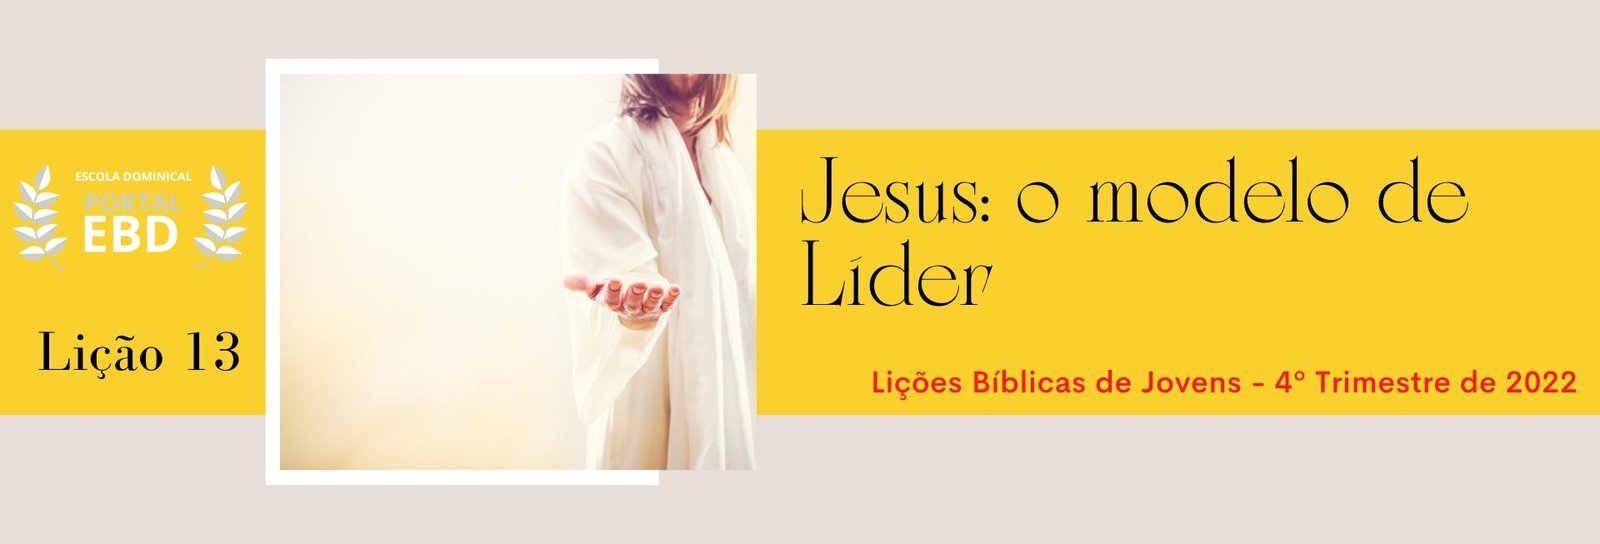 Lição 13 - Jesus: o modelo de líder II